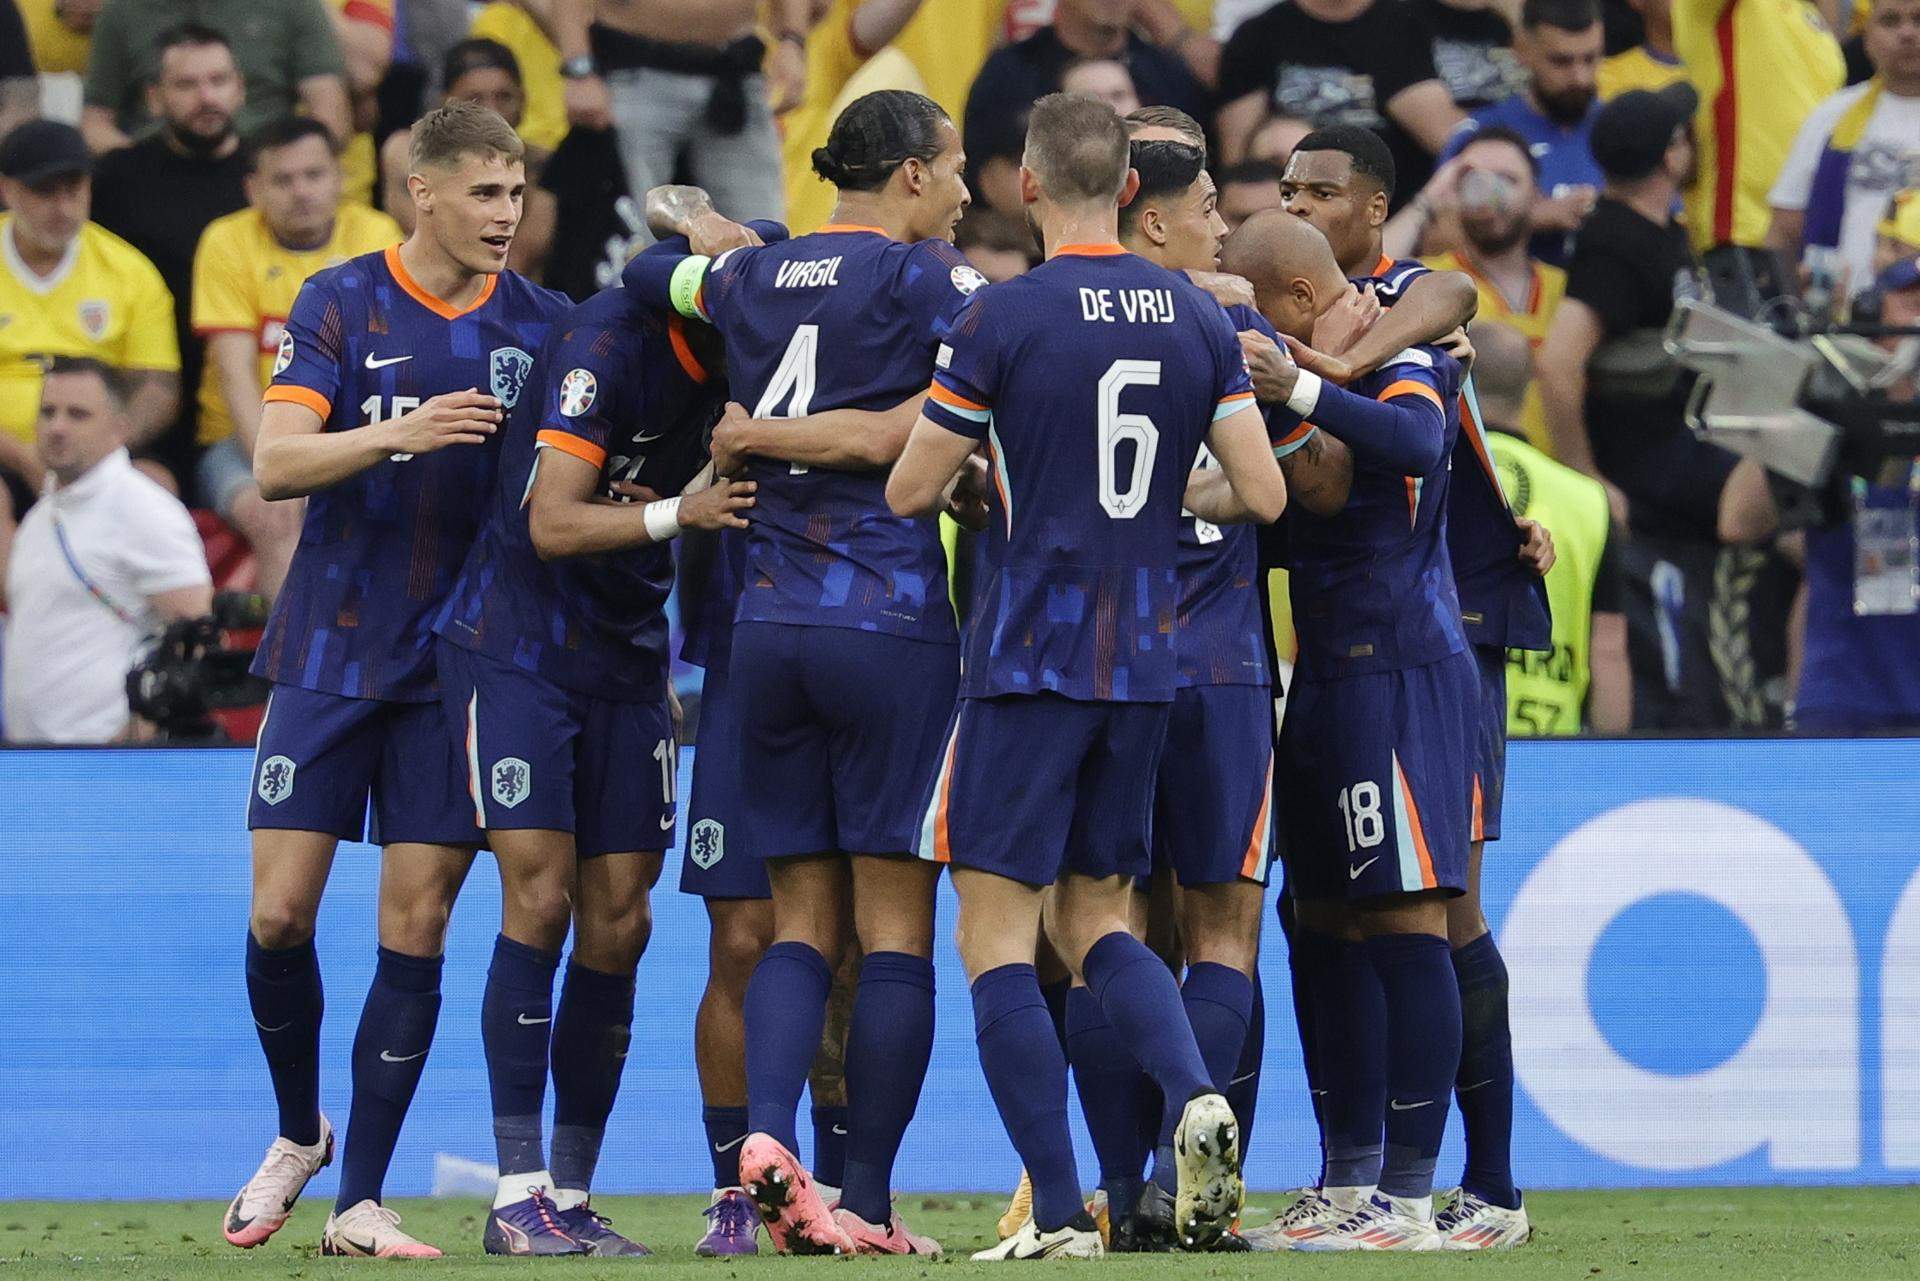 Països Baixos goleja Romania i completa el seu millor partit de l'Eurocopa (0-3)